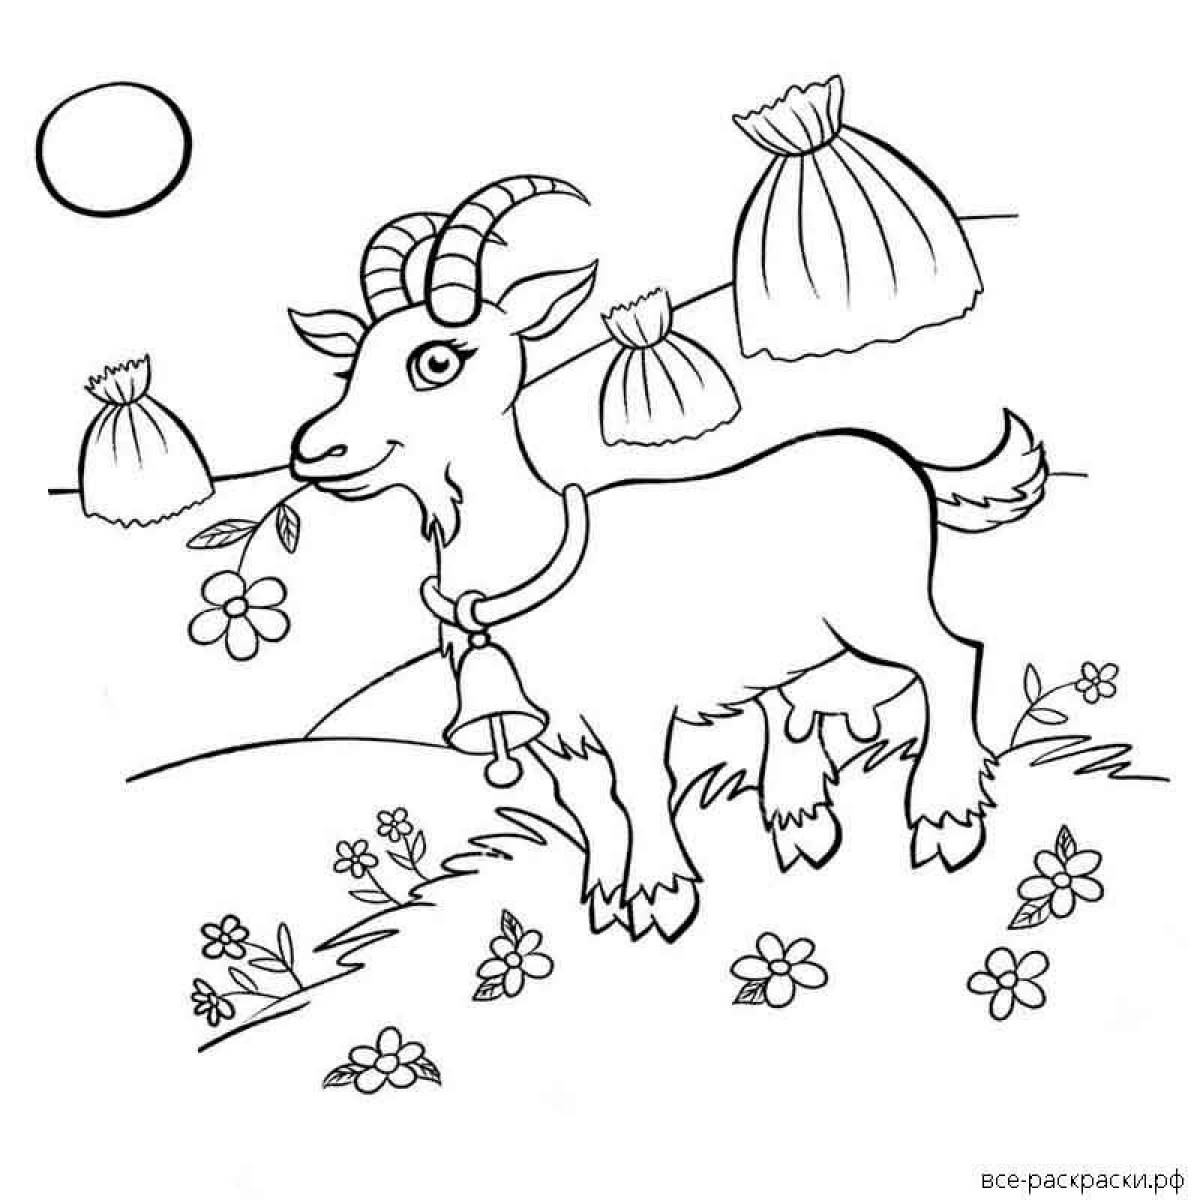 Сказочная страница раскраски коз для детей